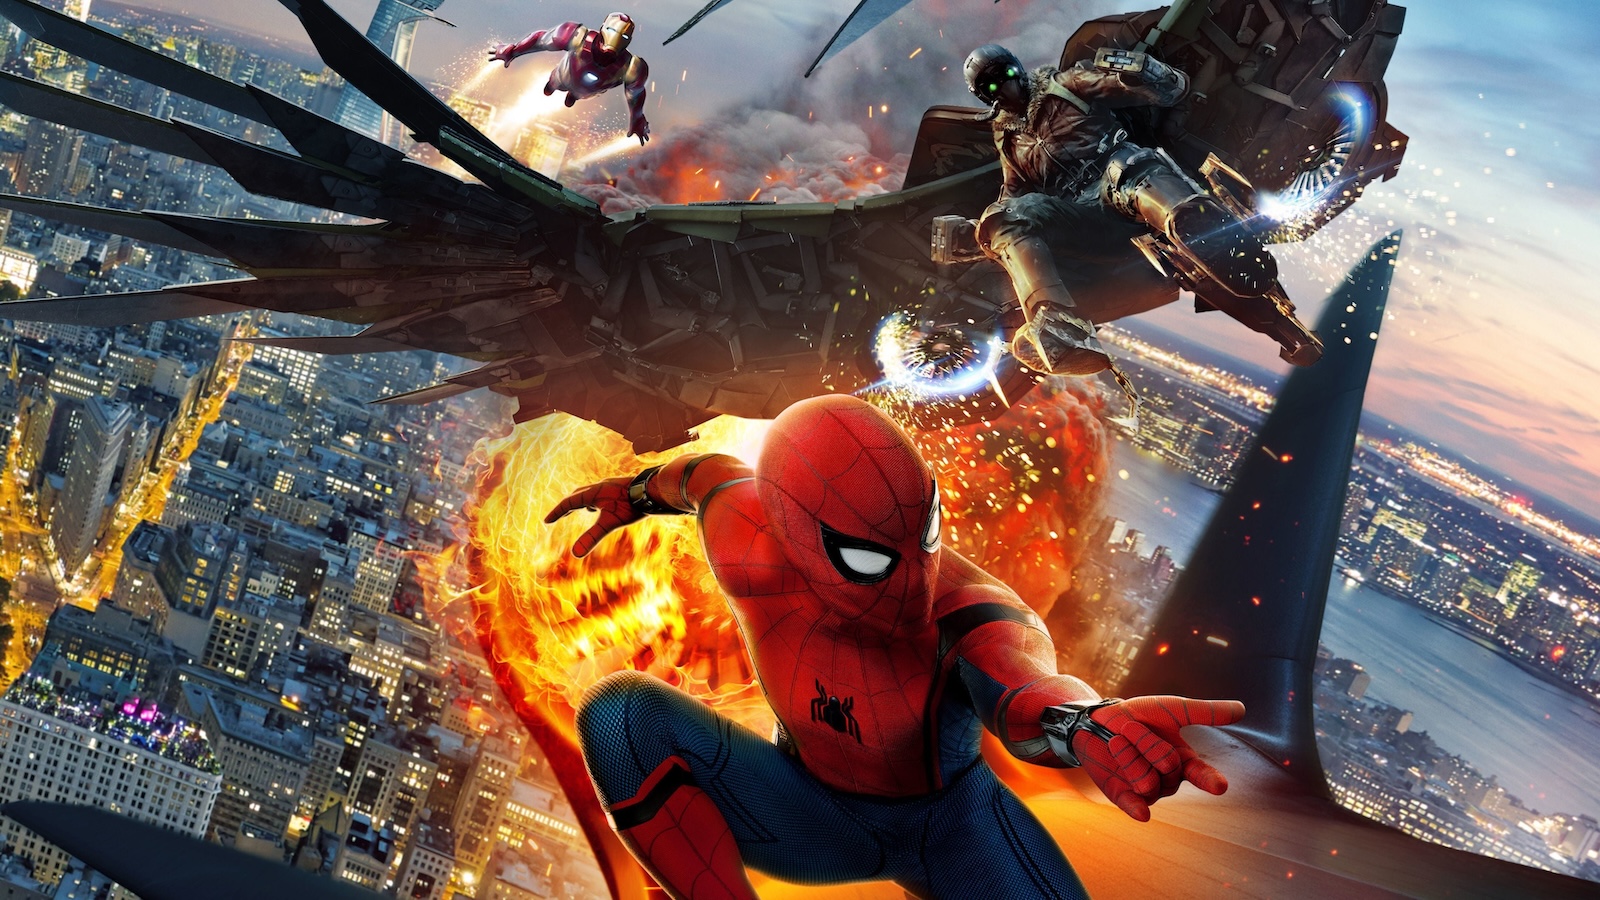 Spider-Man: Homecoming, la versione home video 4K a un prezzo imperdibile su Amazon